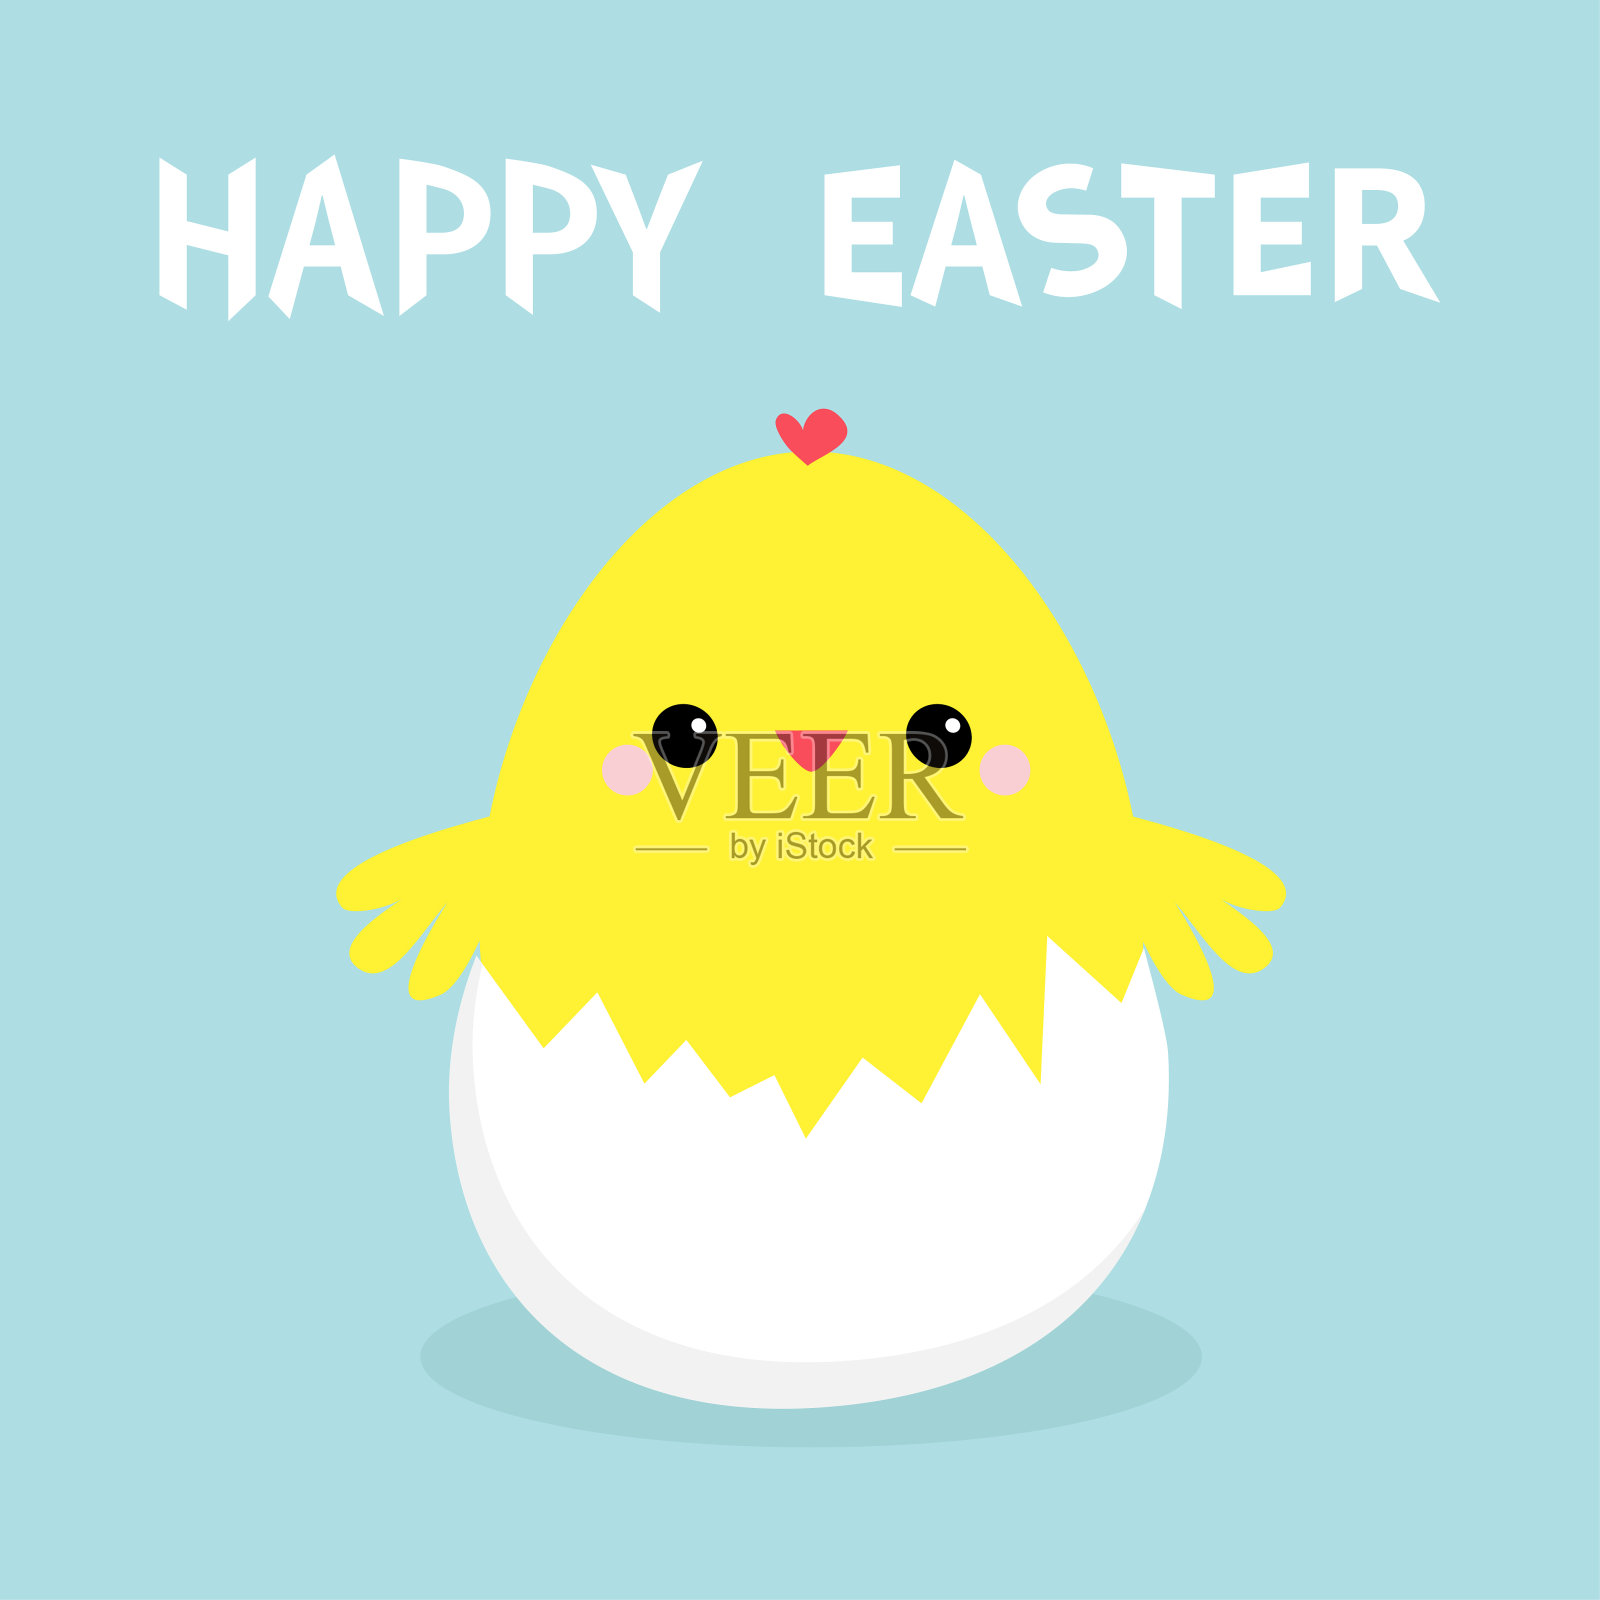 复活节快乐，蛋壳里的小鸡。可爱的卡通有趣的卡哇伊宝宝角色。平面设计。贺卡。蓝色粉彩背景。插画图片素材